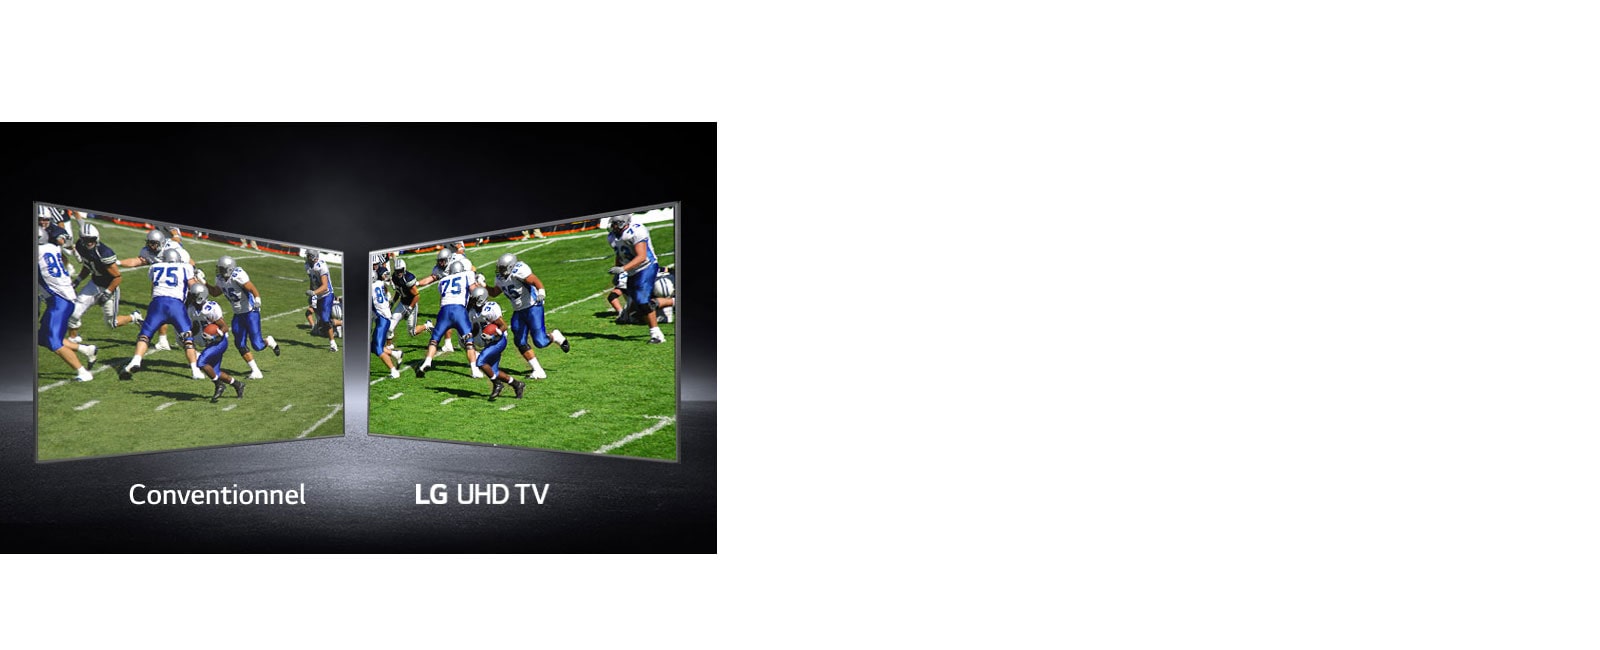 Image de joueurs jouant sur un terrain de football illustrée sur deux écrans. L'un est un écran conventionnel et l'autre un téléviseur UHD.